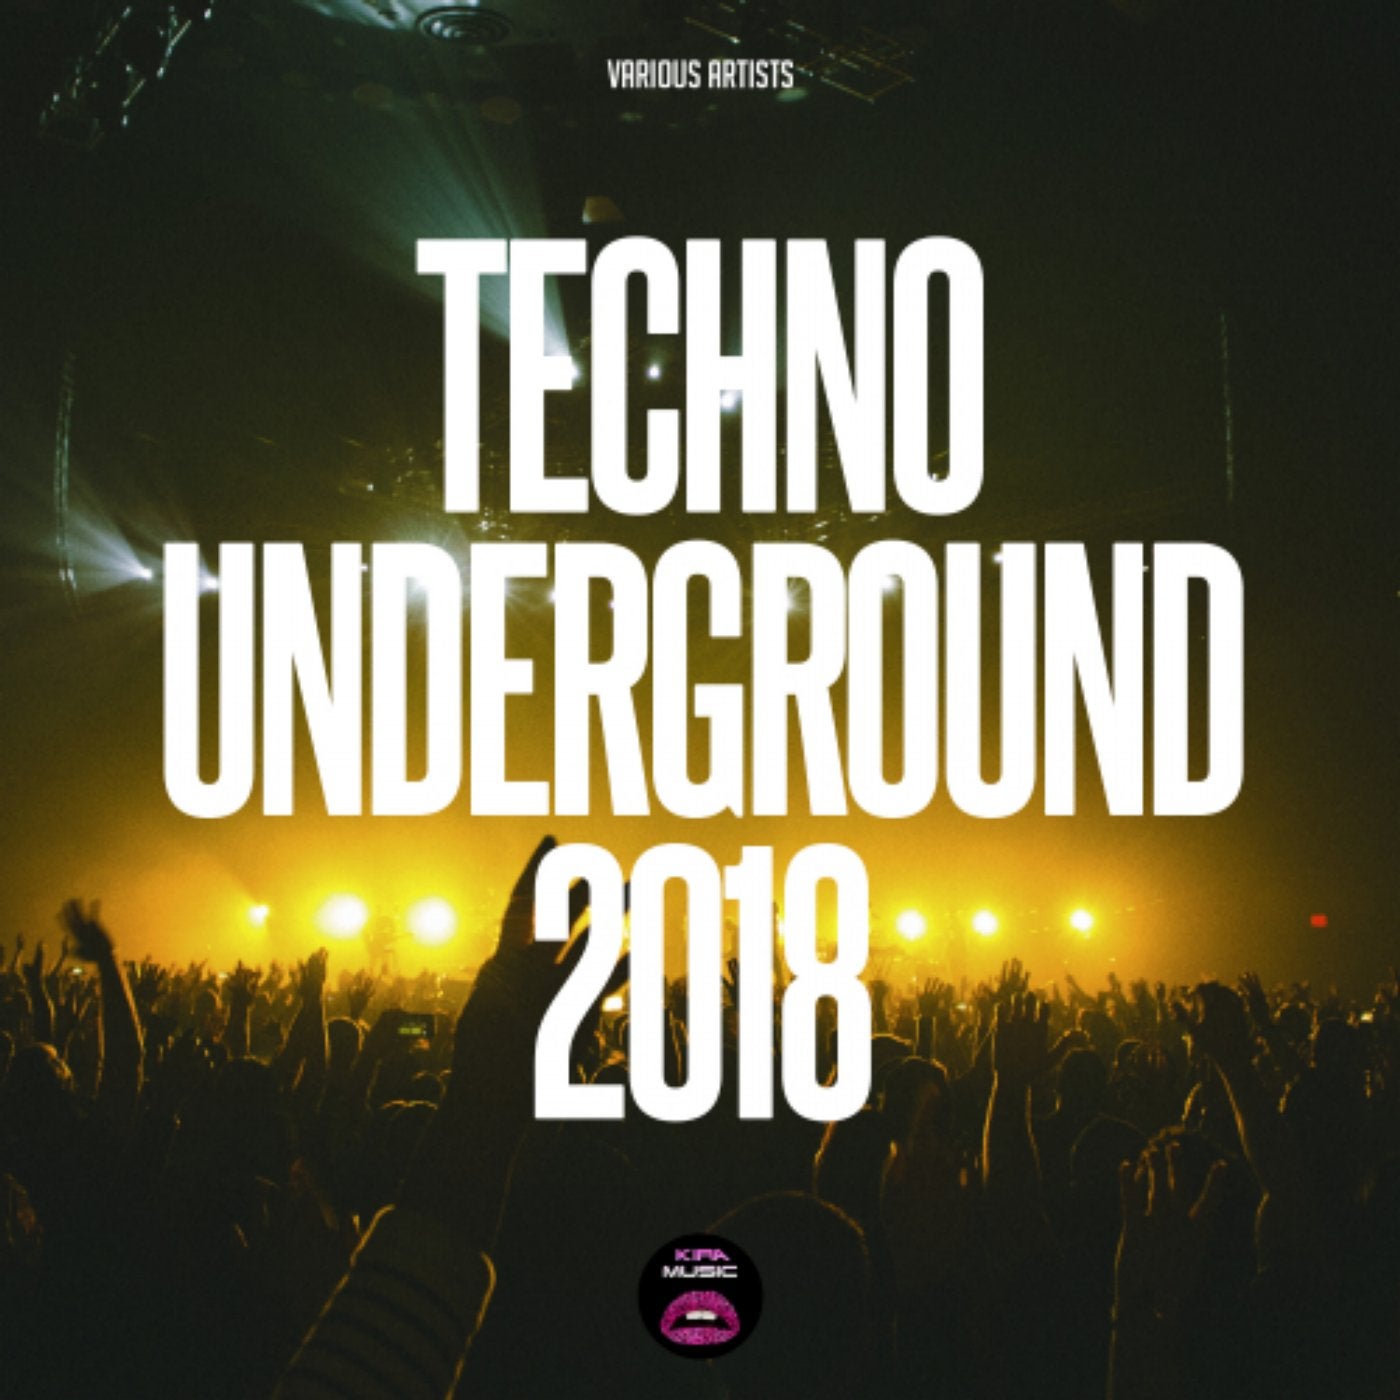 Techno Underground 2018